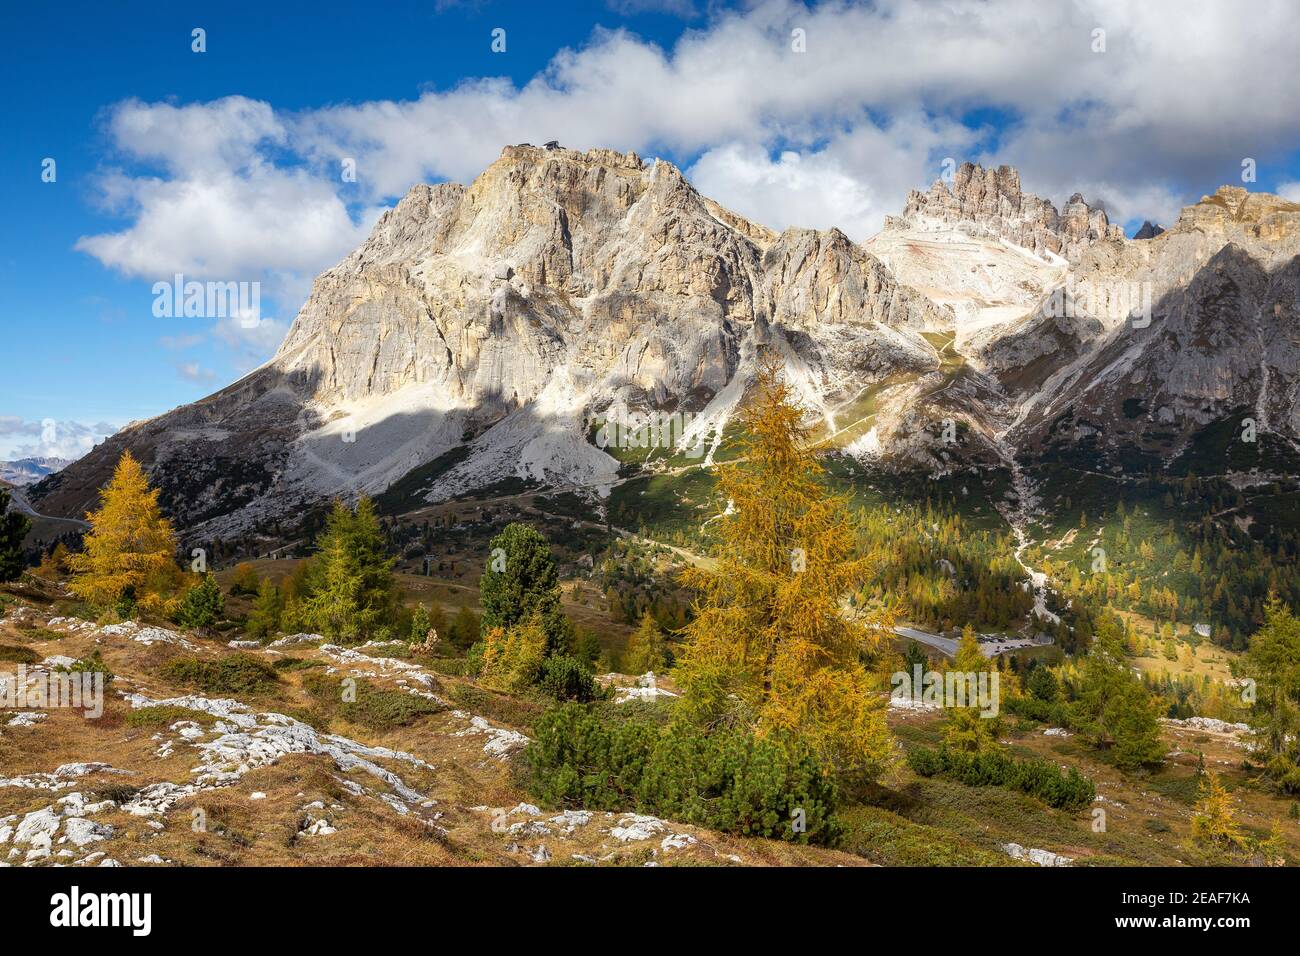 View on Lagazuoi mountain. Passo Falzarego. Larches trees (Larix decidua) in autumn season. The Dolomites. Italian Alps. Europe. Stock Photo